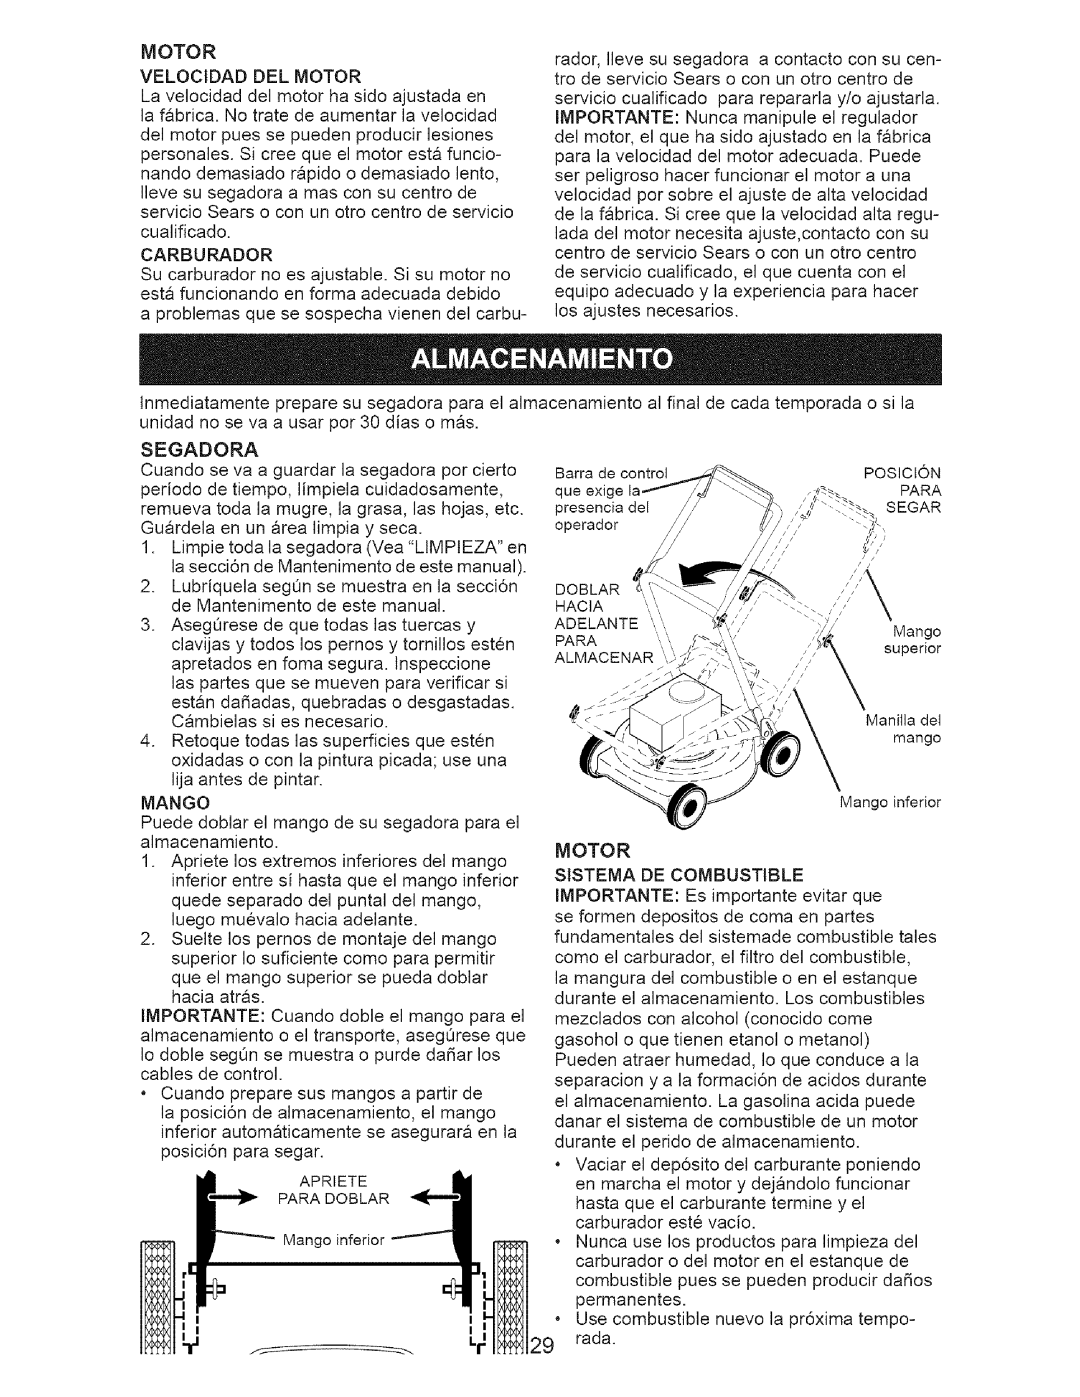 Craftsman 917.38519 owner manual Motor Velocidad Del Motor, Mango, Motor Sistema De Combustible 